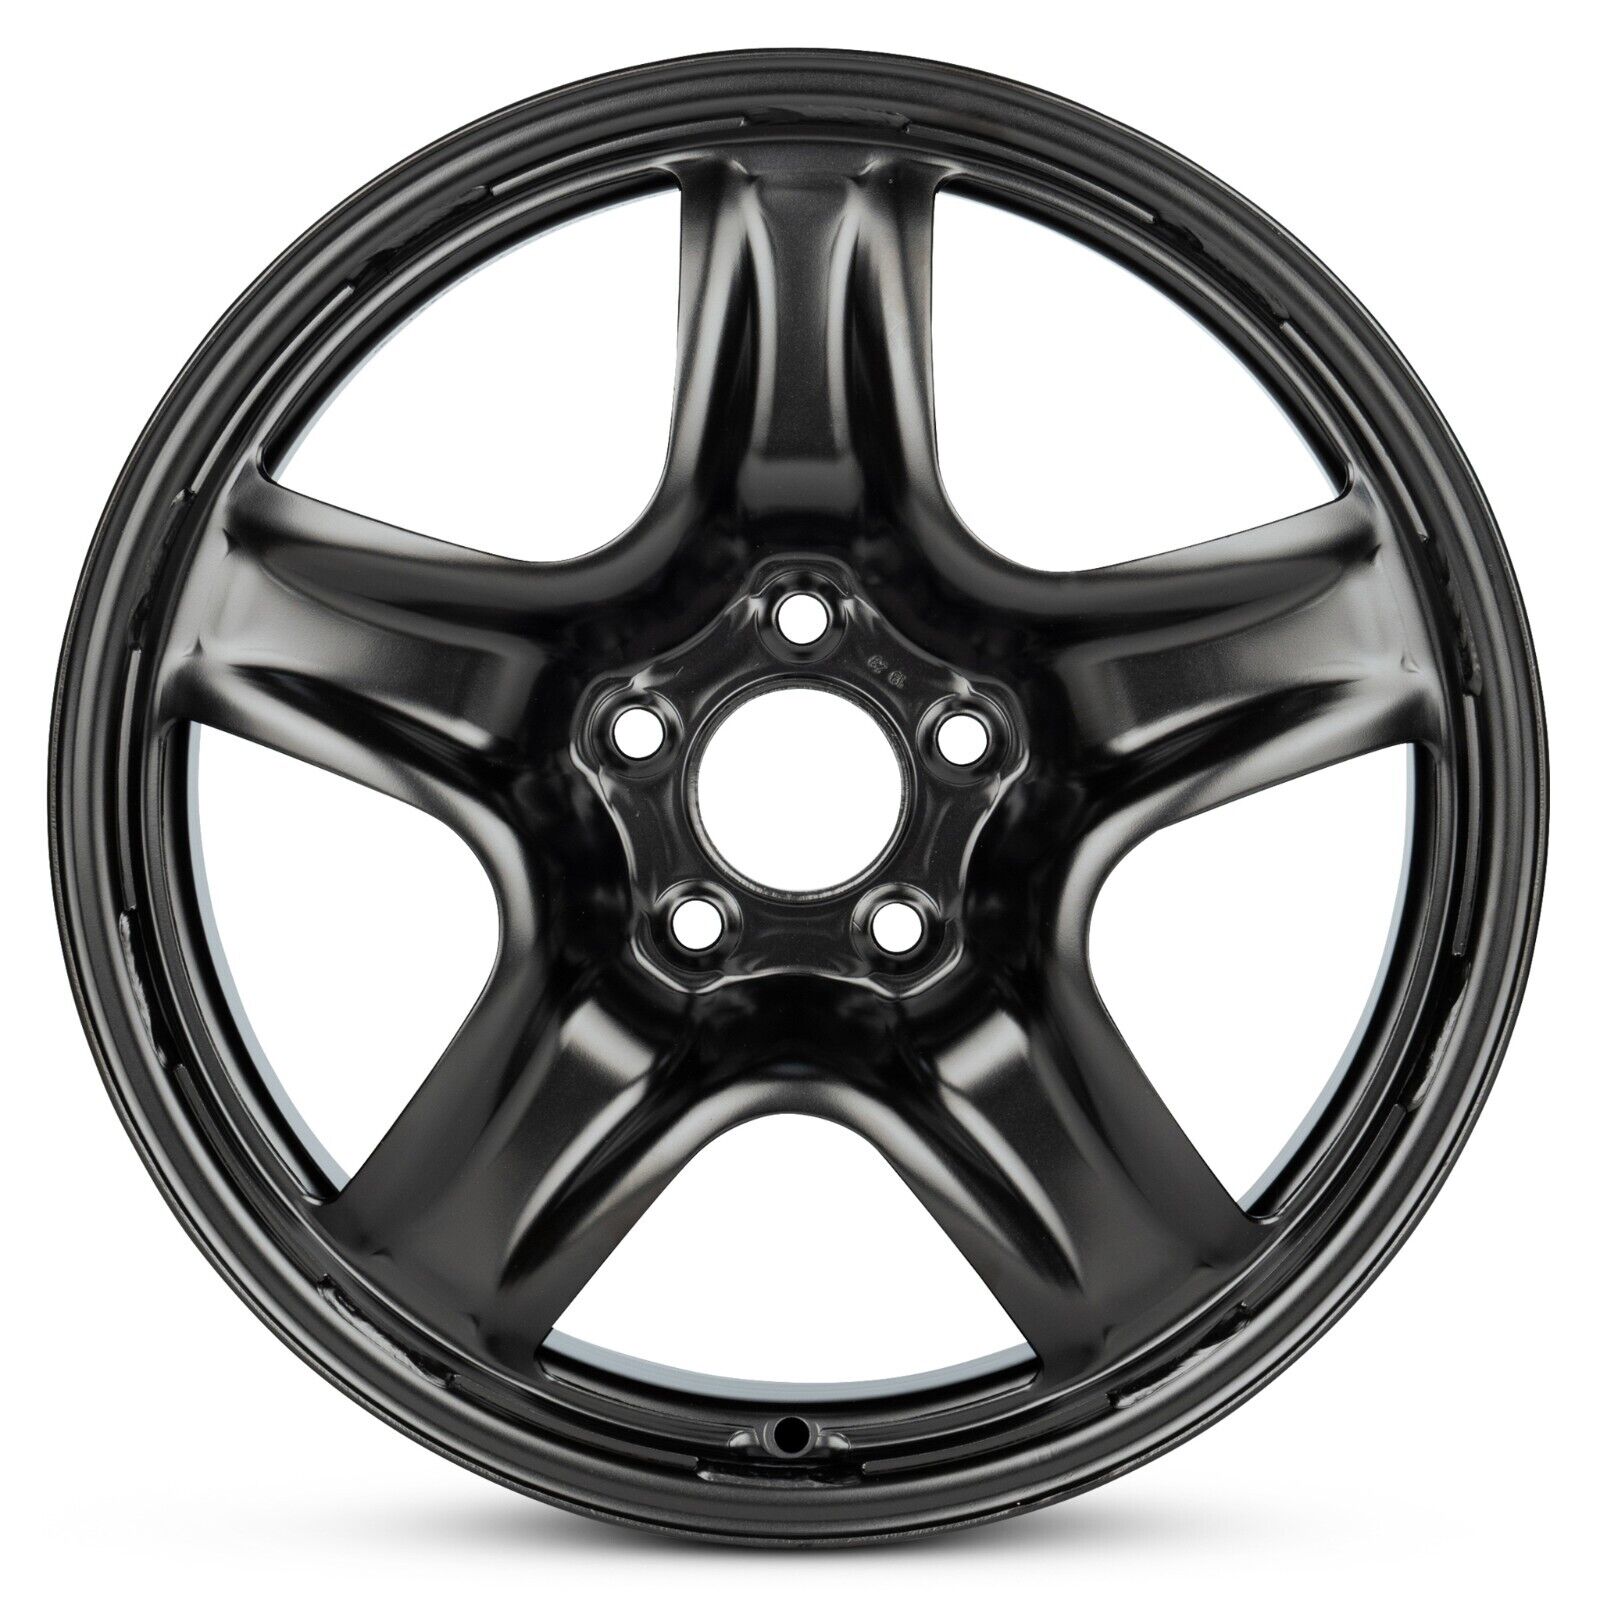 New Wheel For 2005-2010 Chevrolet Cobalt 17 Inch Black Steel Rim